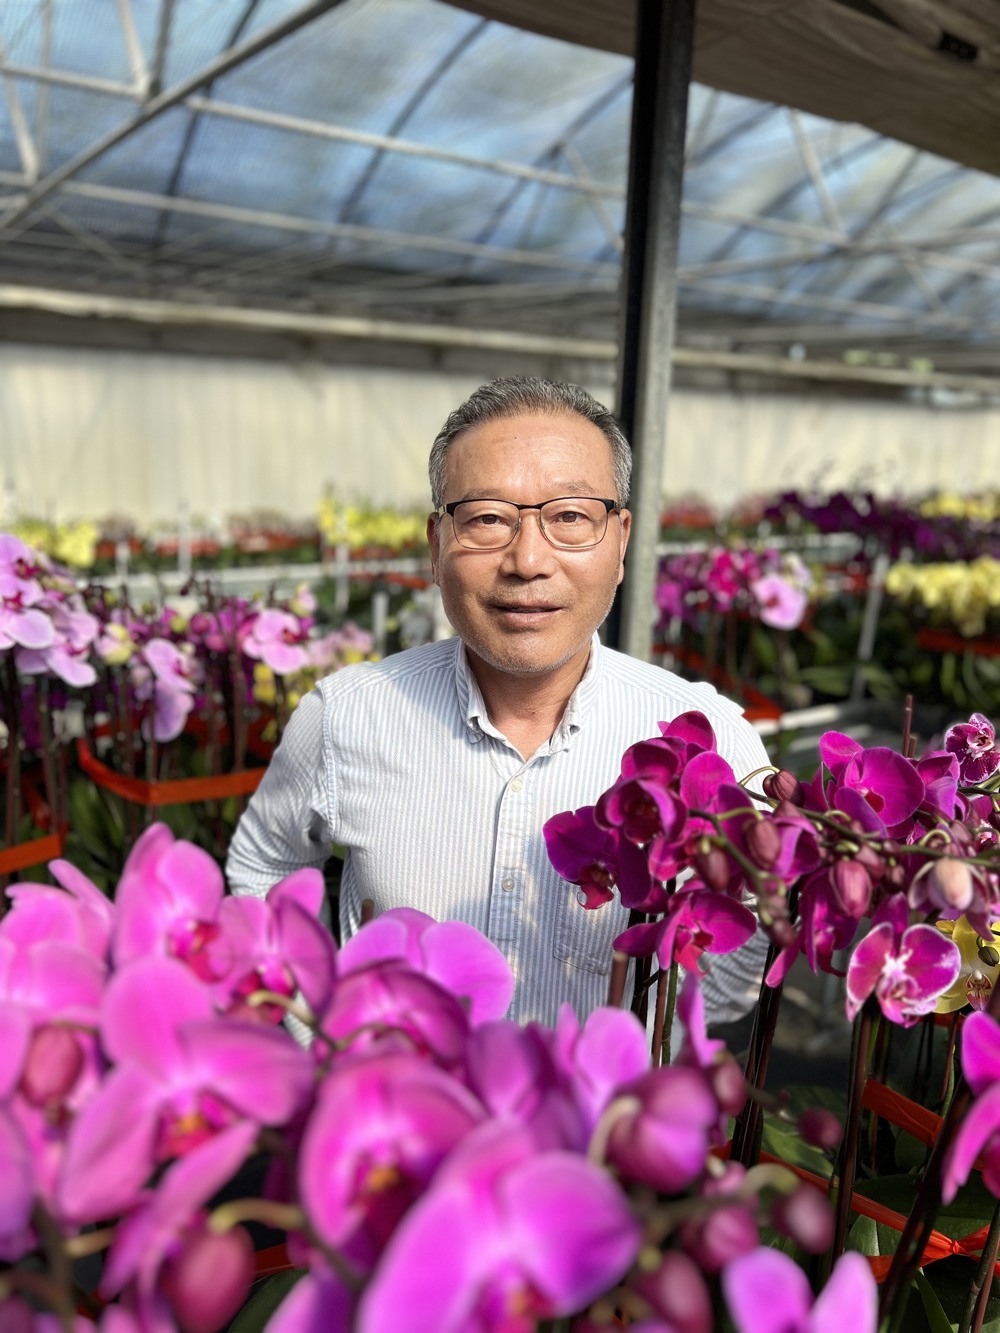 황병구 미주한상총연 회장이 미국 올랜도에 위치한 자신의 코러스 오키드(Korus orchid) 농장에서 직접 재배중인 호접난과 포즈를 취하고 있다.